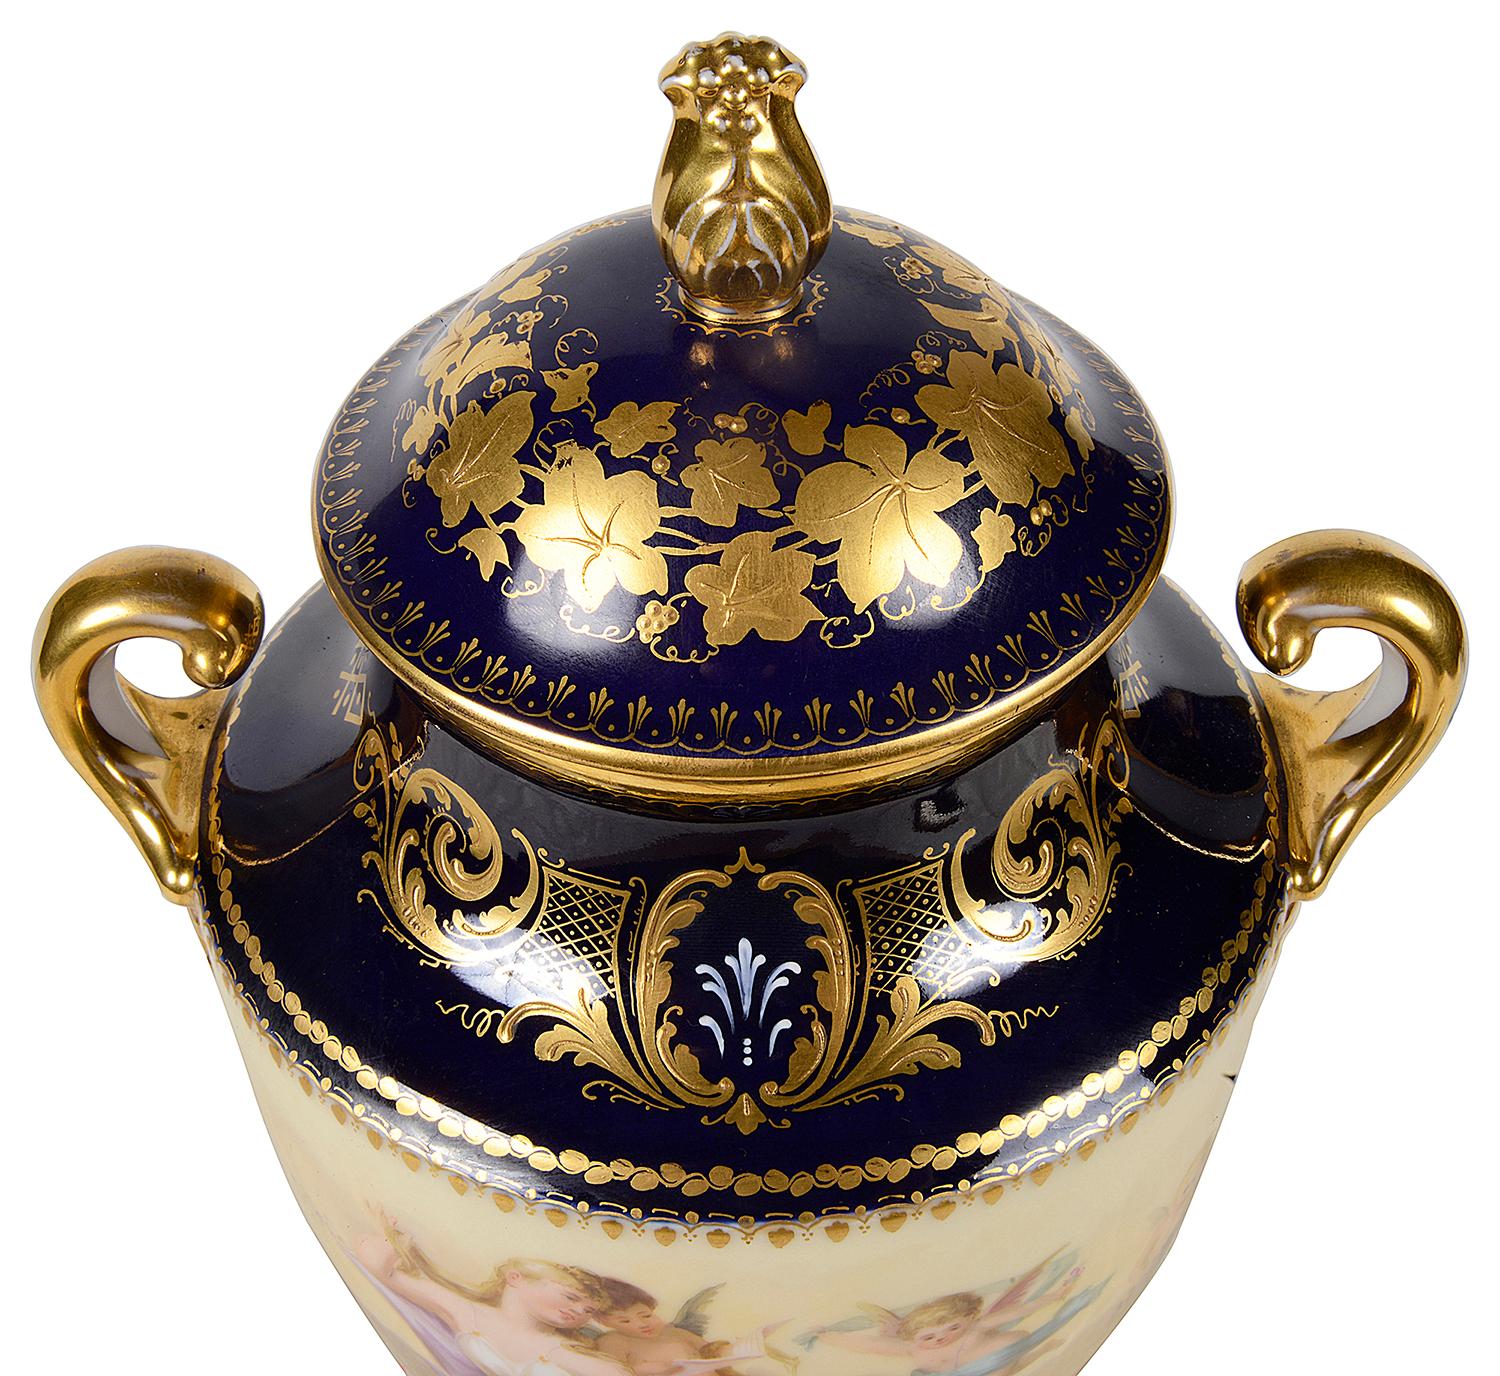 Vase de qualité en porcelaine de Vienne de la fin du 19e siècle, à deux anses, avec un fond bleu cobalt, un décor de volutes dorées, une bande centrale de couleur crème avec une scène classique d'une jeune fille allongée avec des chérubins jouant.